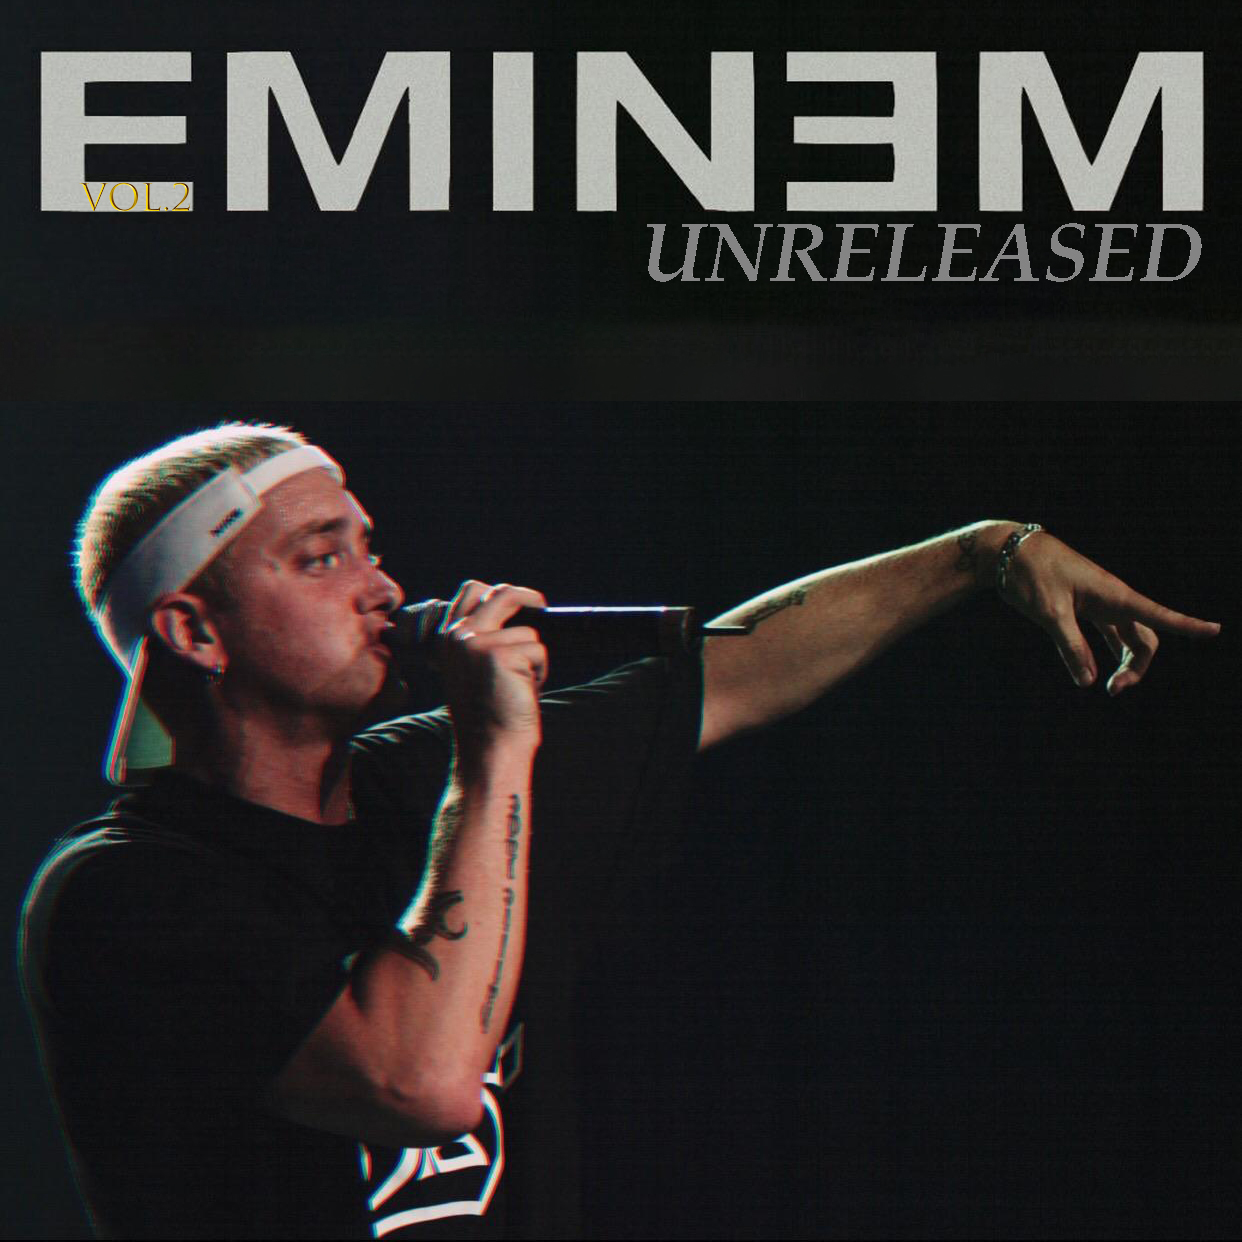 Eminem - Unreleased Vol.2